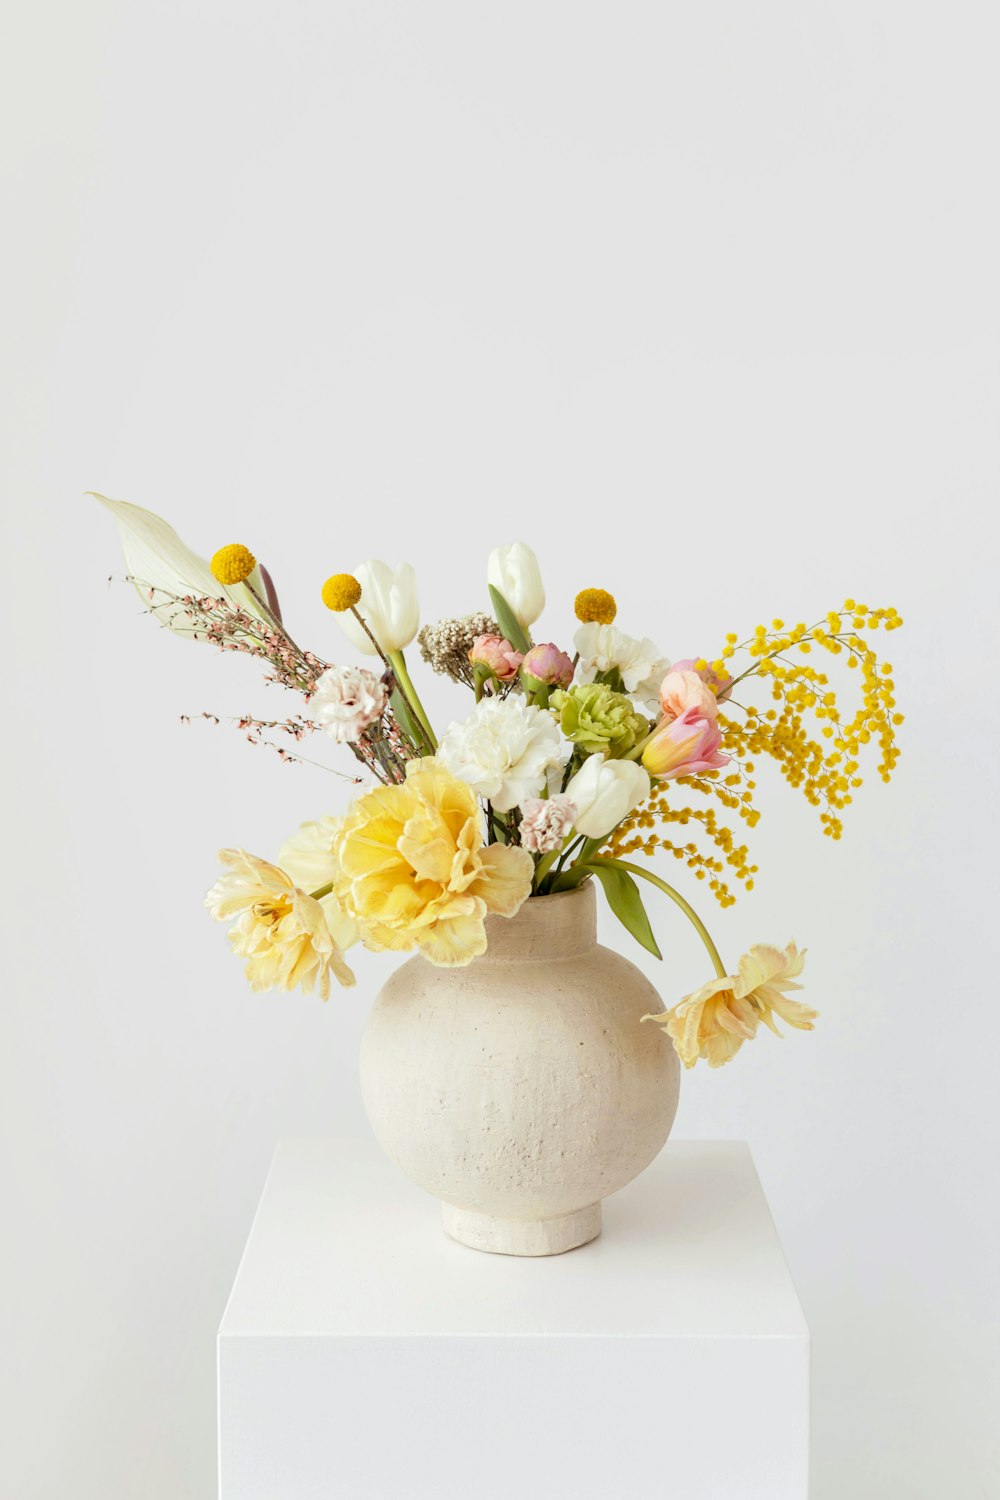 um vaso branco com flores amarelas e brancas nele